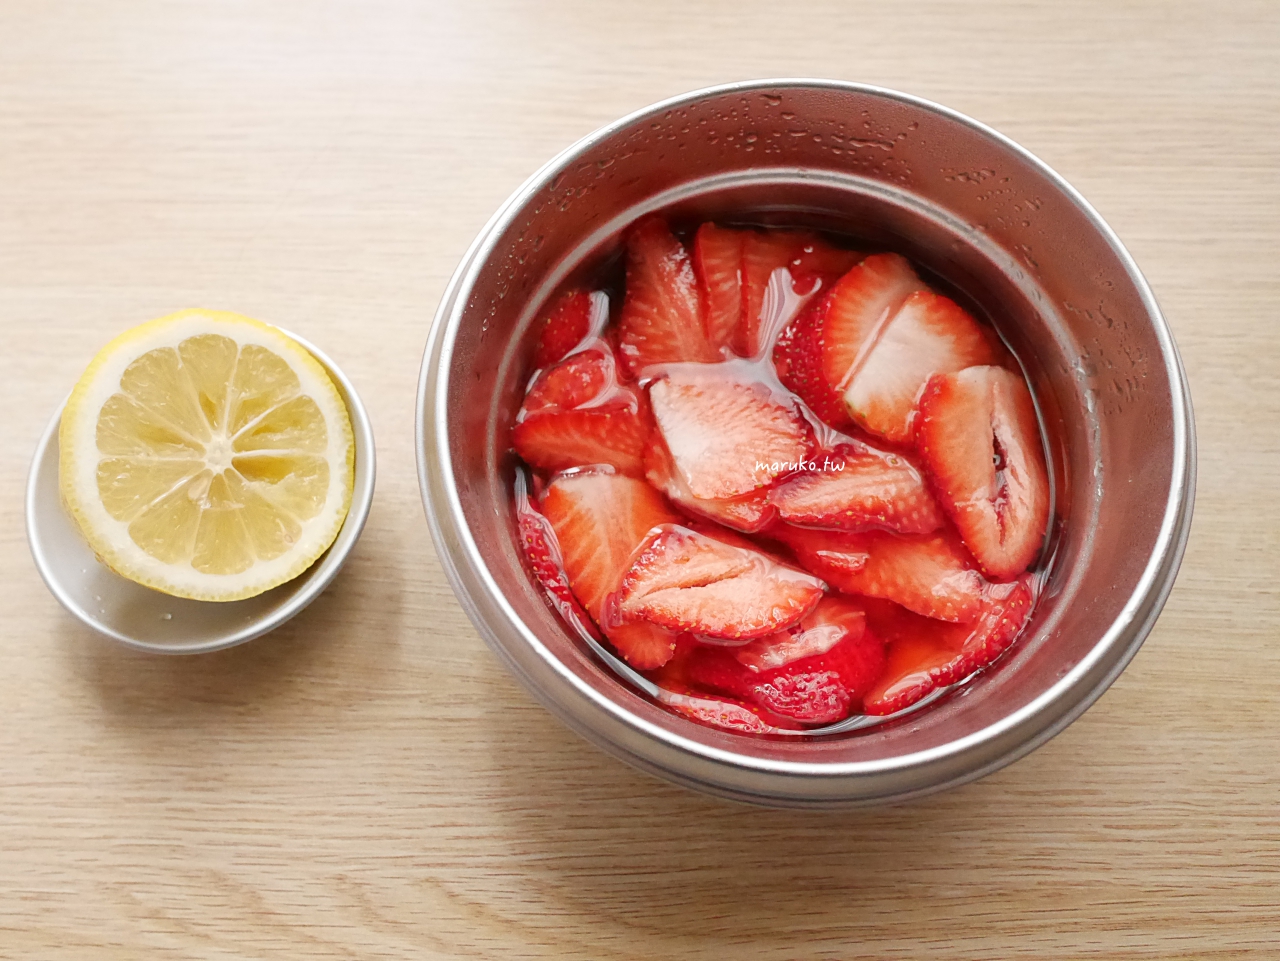 【食譜】新鮮草莓果醬 不加一滴水的草莓醬 沾著草莓吃,簡單又健康 @Maruko與美食有個約會